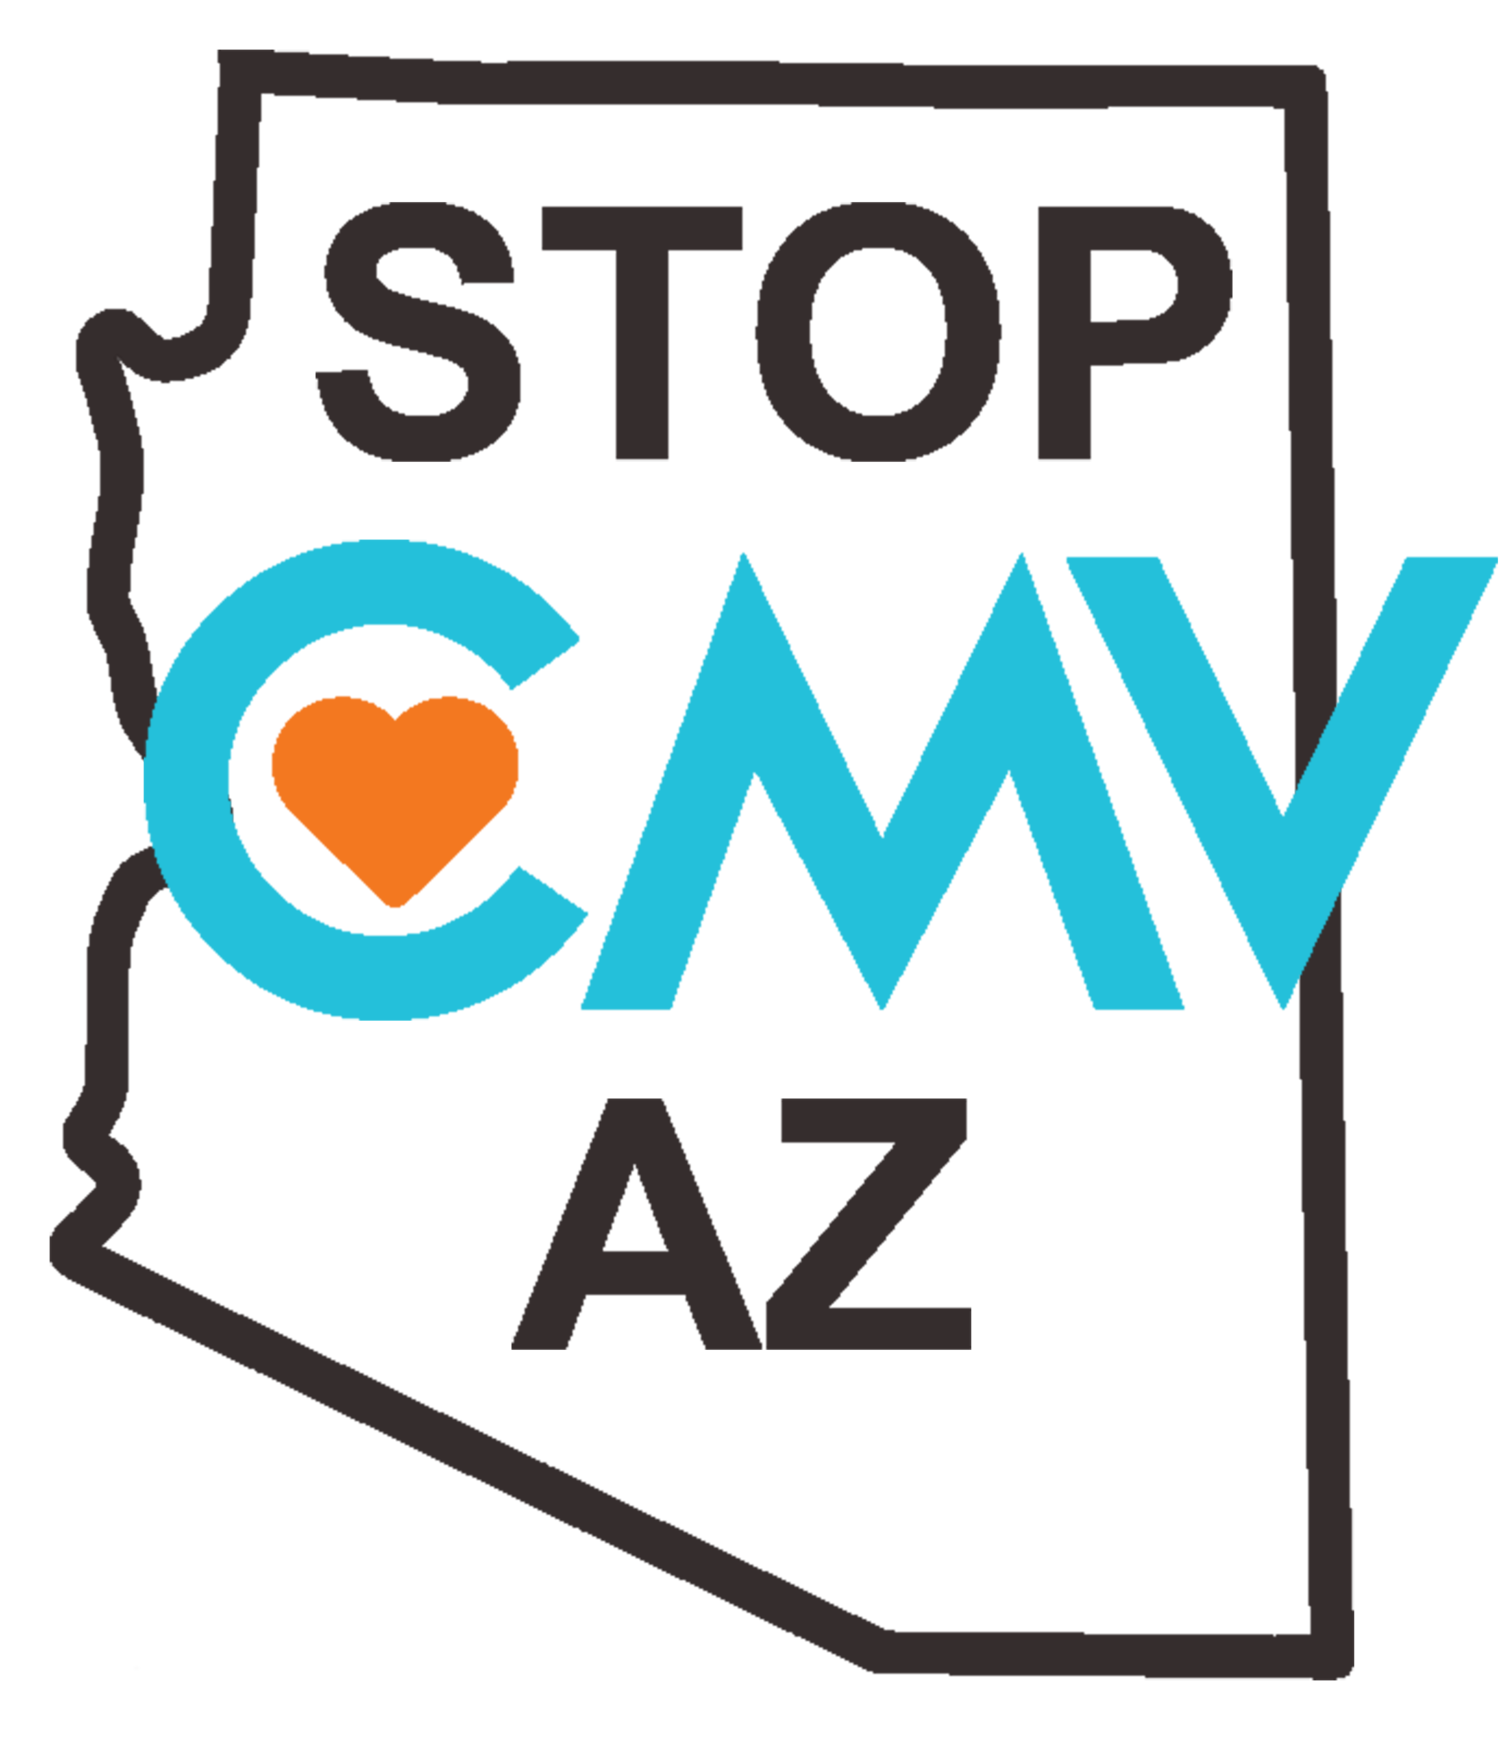 Stop CMV AZ